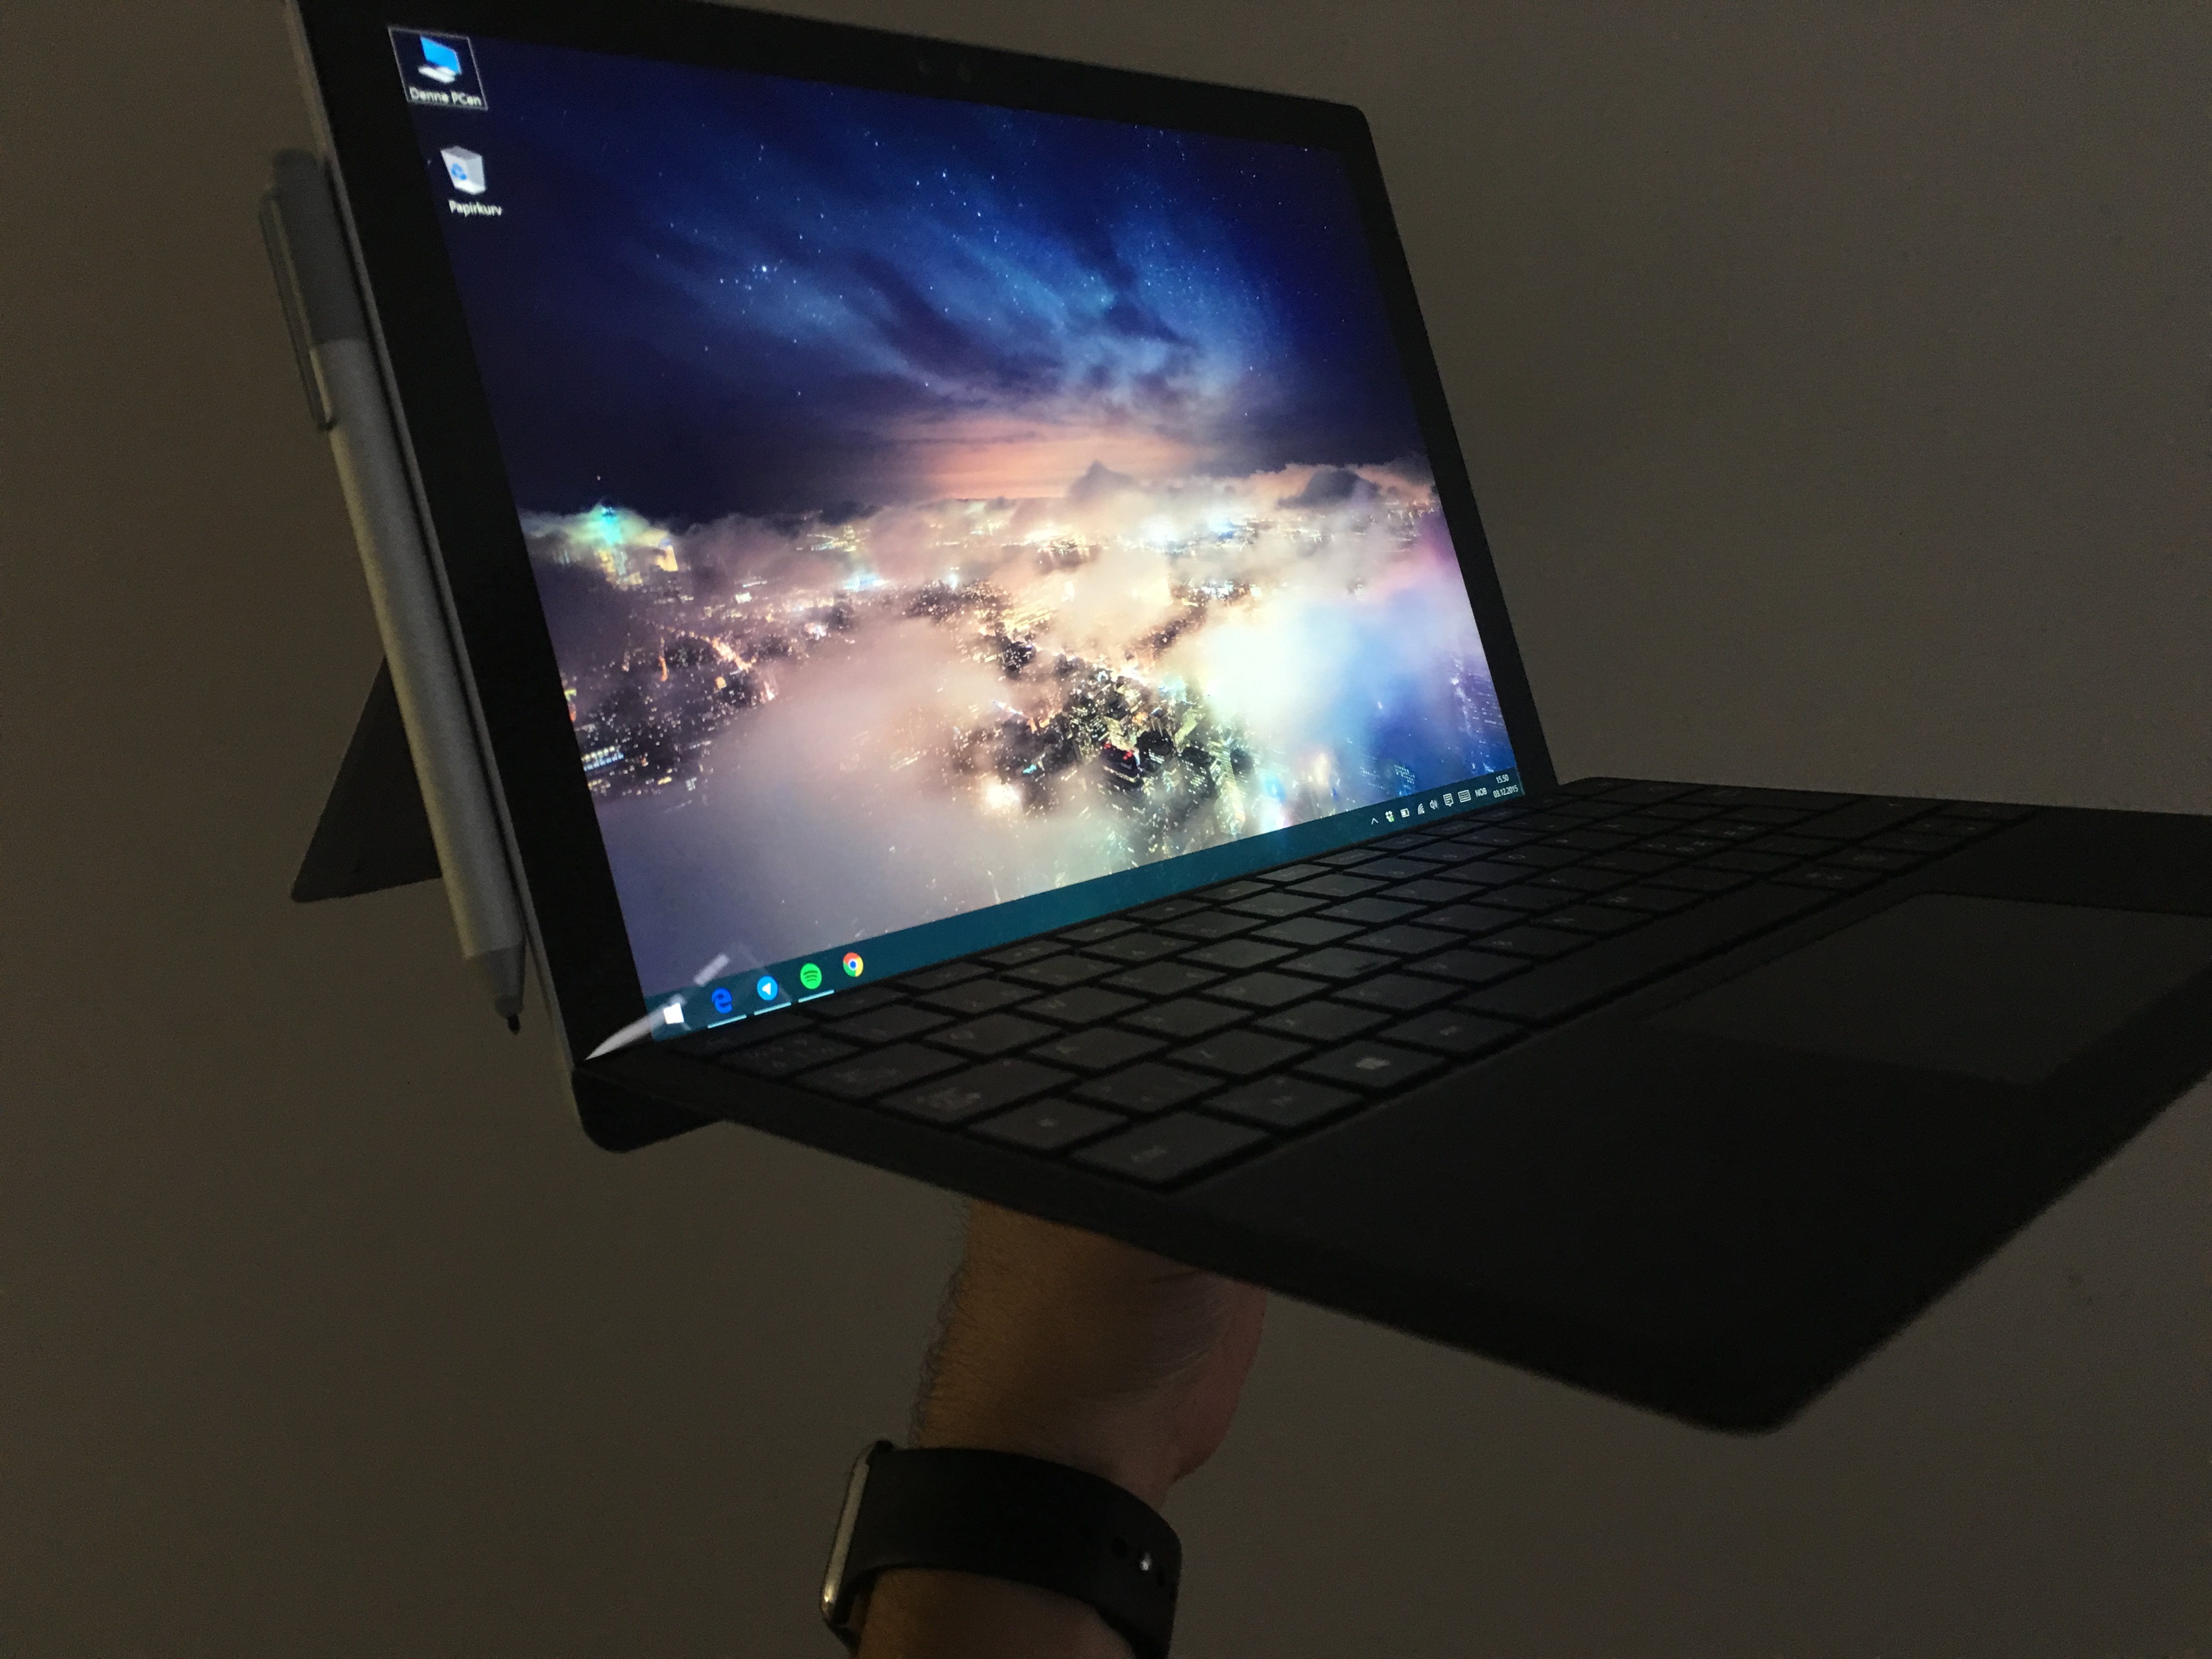 Surface Pro 4 hadde vært kongen av hybrider og bærbare hadde den bare hatt fem timer bedre batterlievetid. Likevel er dette et svært godt produkt - det sier mye om potensialet.